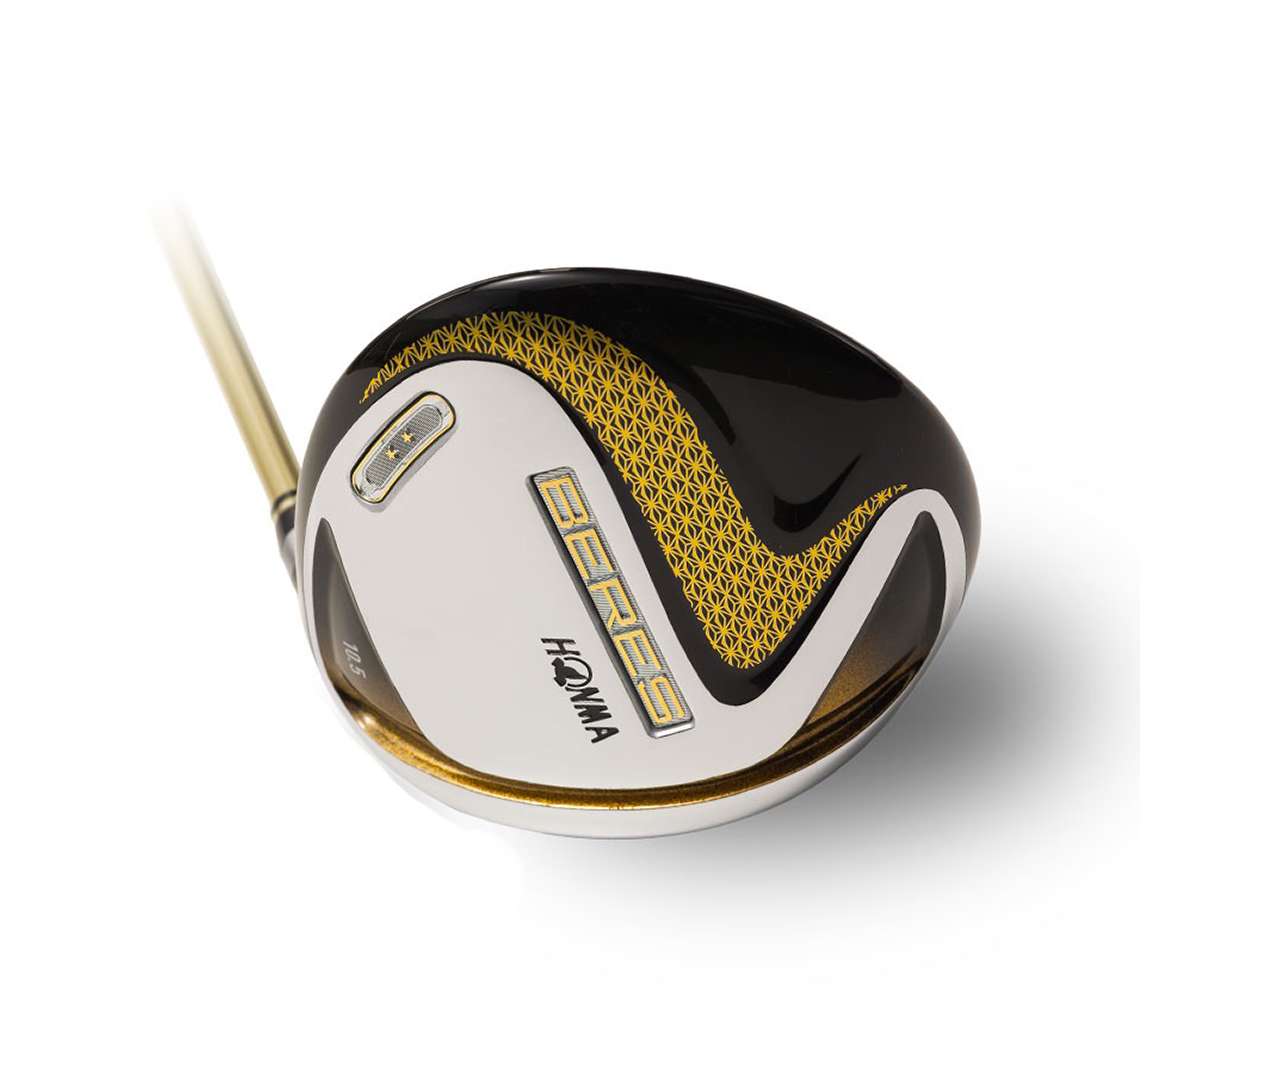 ไม้กอล์ฟ ไม้ตีกอล์ฟ Honma Beres S-07 Driver Golf (Driver 9.5/10.5องศา  R/SR Graphite Shaft) ราคาสุดพิเศษ ลดล้างสต็อก (DVH001)